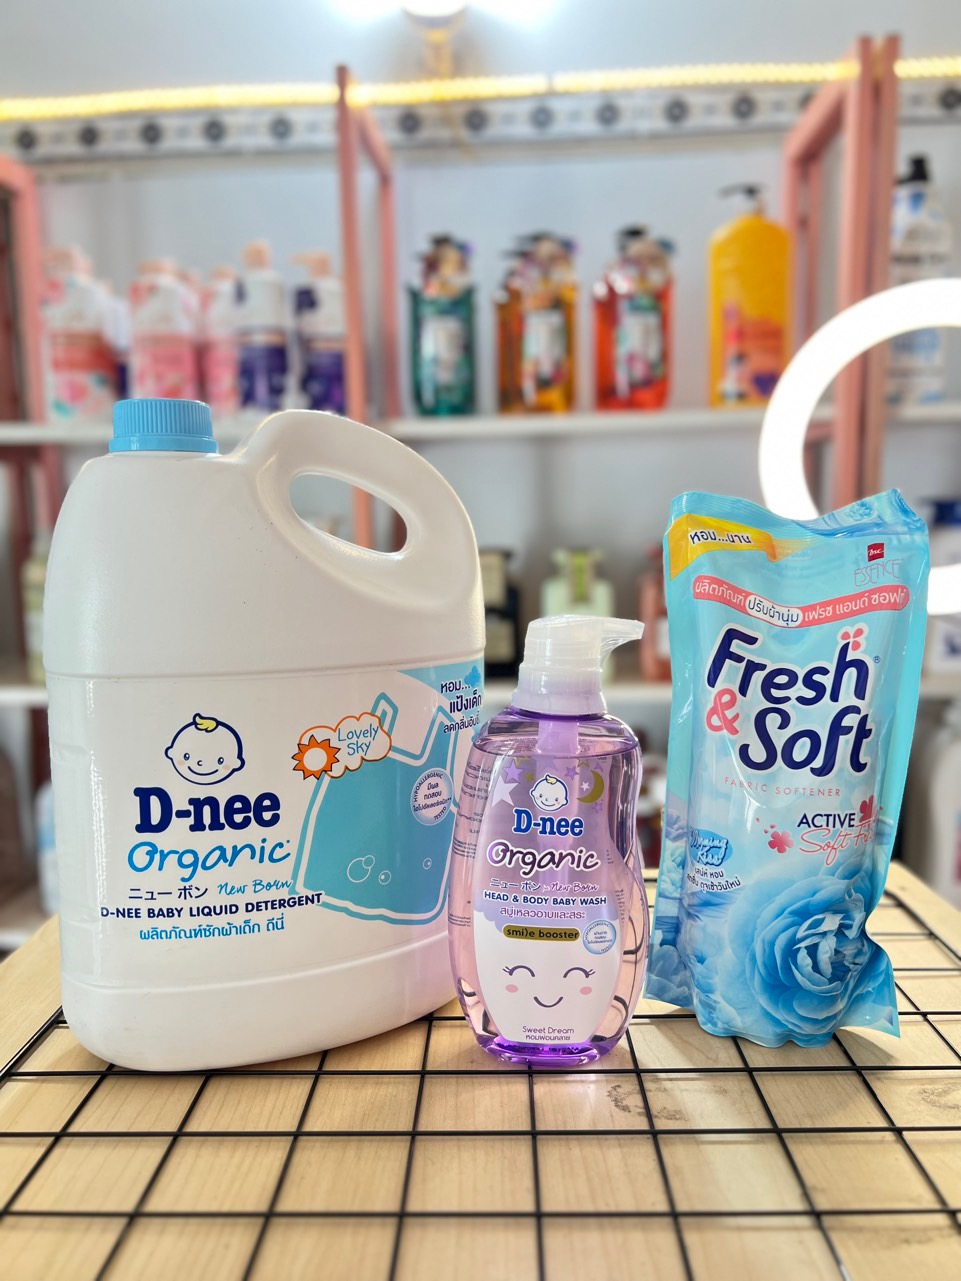 [Mua Combo Giá Rẻ] Combo gồm Giặt D-nee-tắm gội Dnee-nước xả Fresh Soft Thái Lan